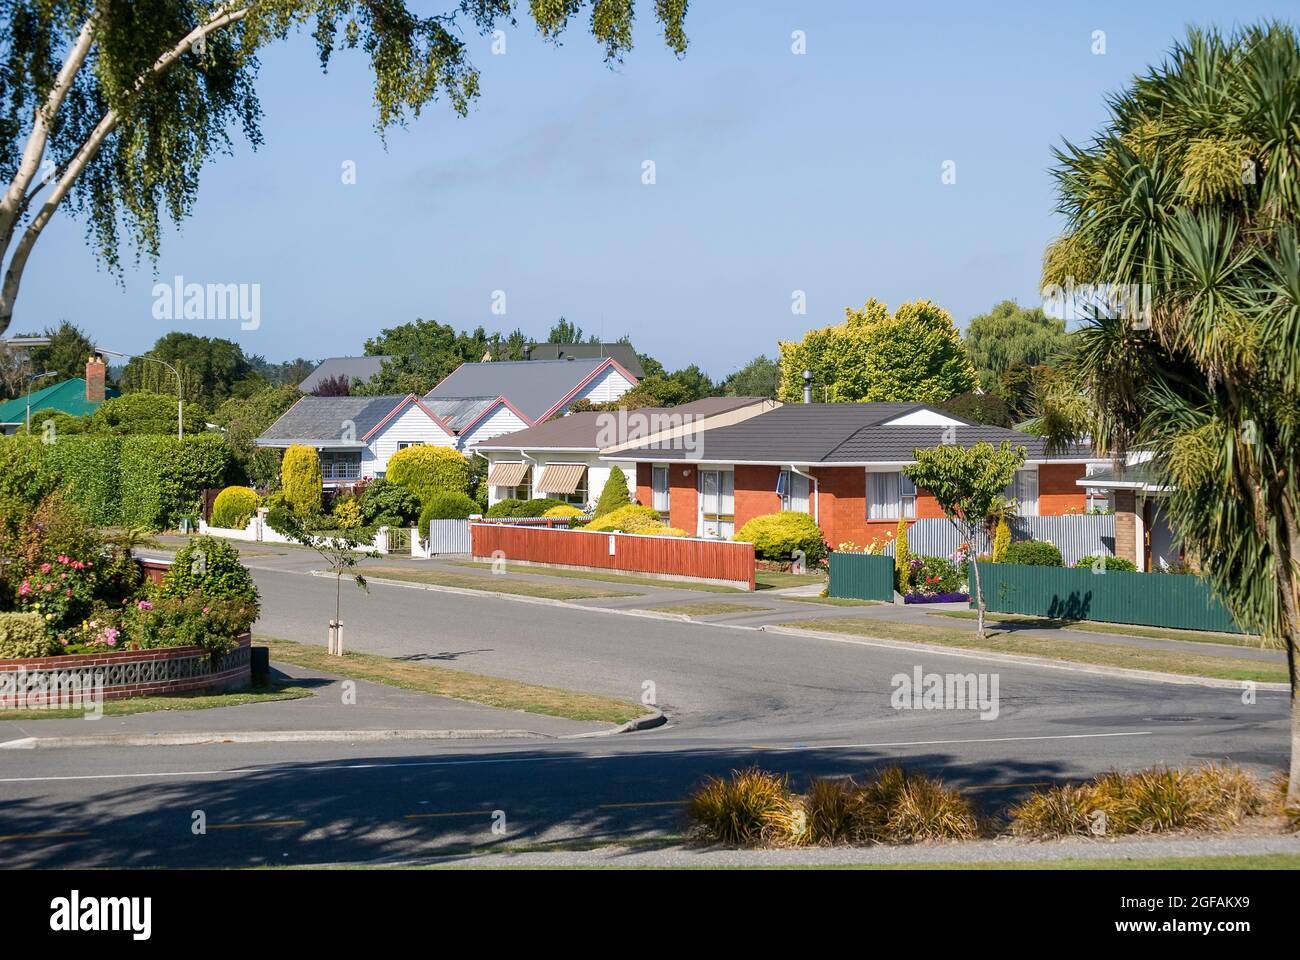 Residential street, Jones Street, Kaiapoi, Canterbury, New Zealand Stock Photo